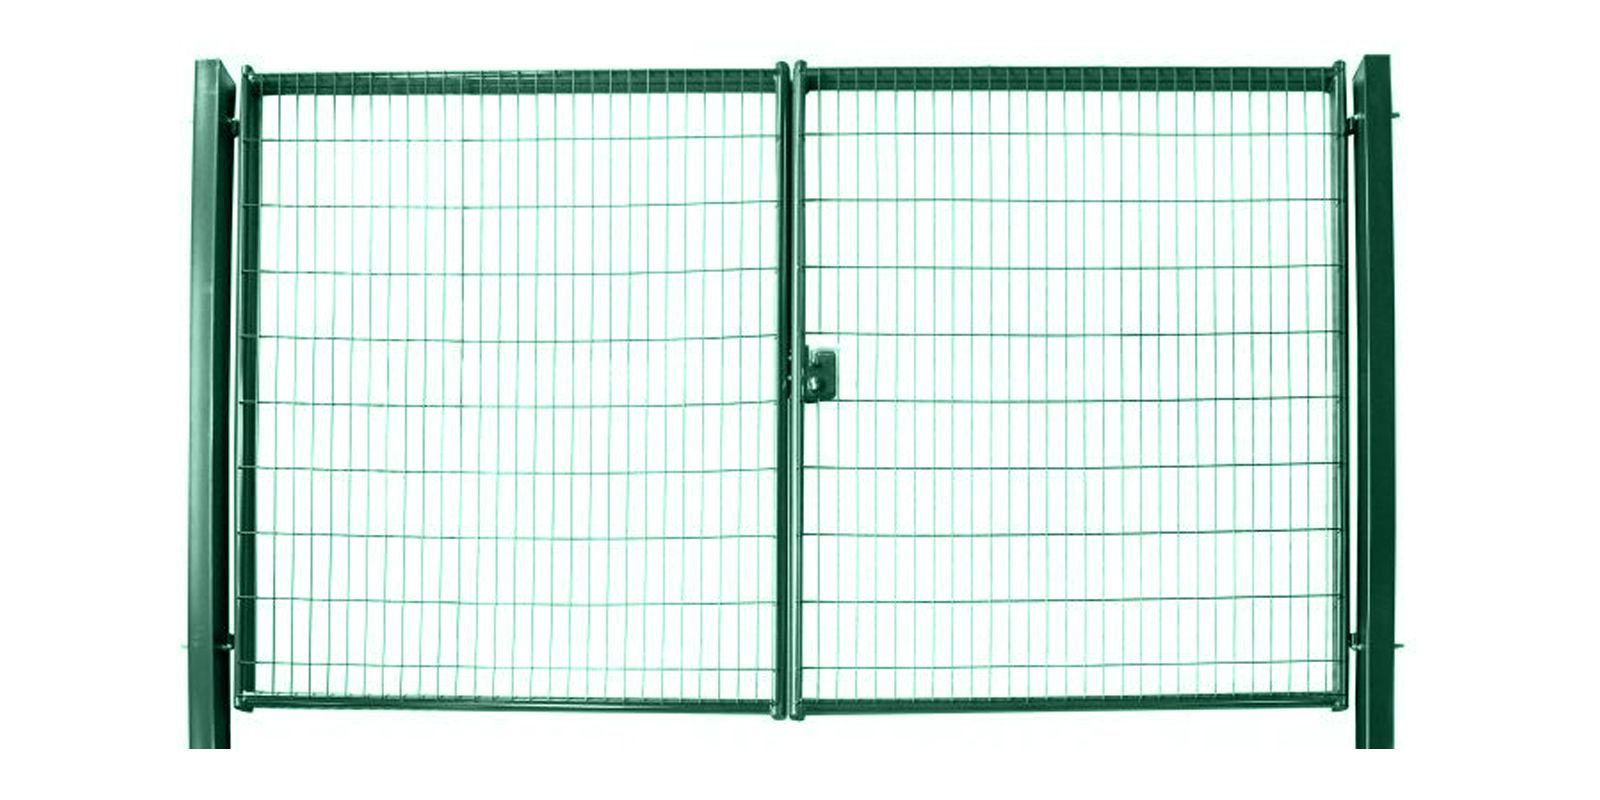 Ворота для панельного ограждения Medium, 2,03 м,  ширина 4 м, изображение, фото | Сталь ТД